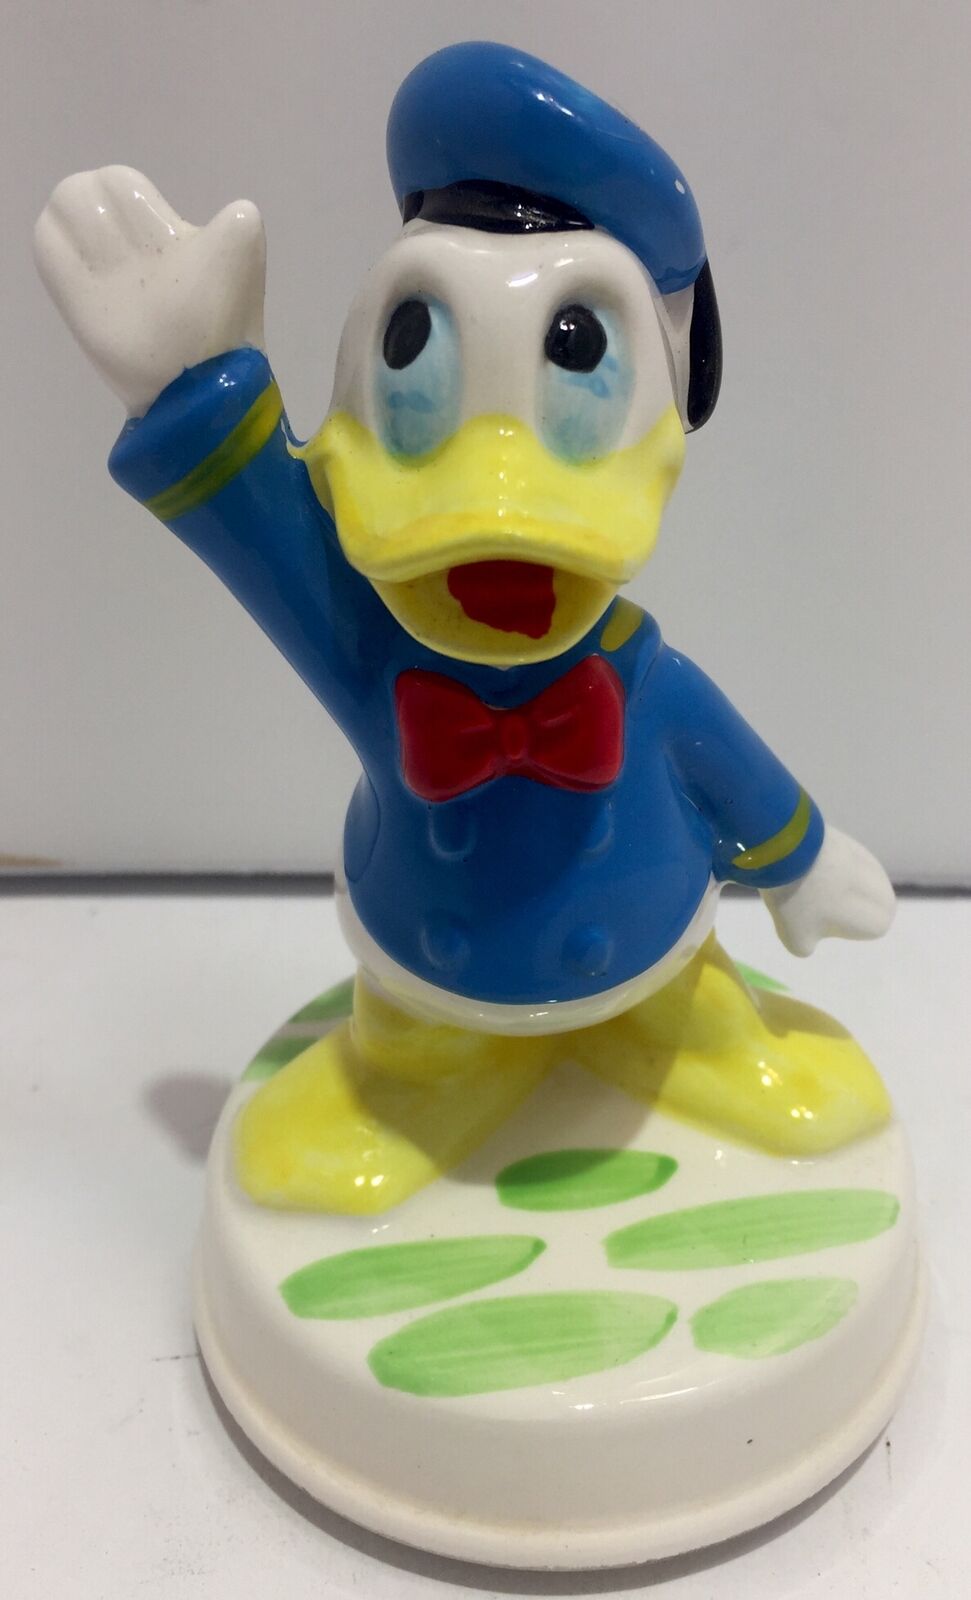 Vintage Donald Duck Porcelain Figurine Music Box by Schmid 4¼ inch Japan c1960s